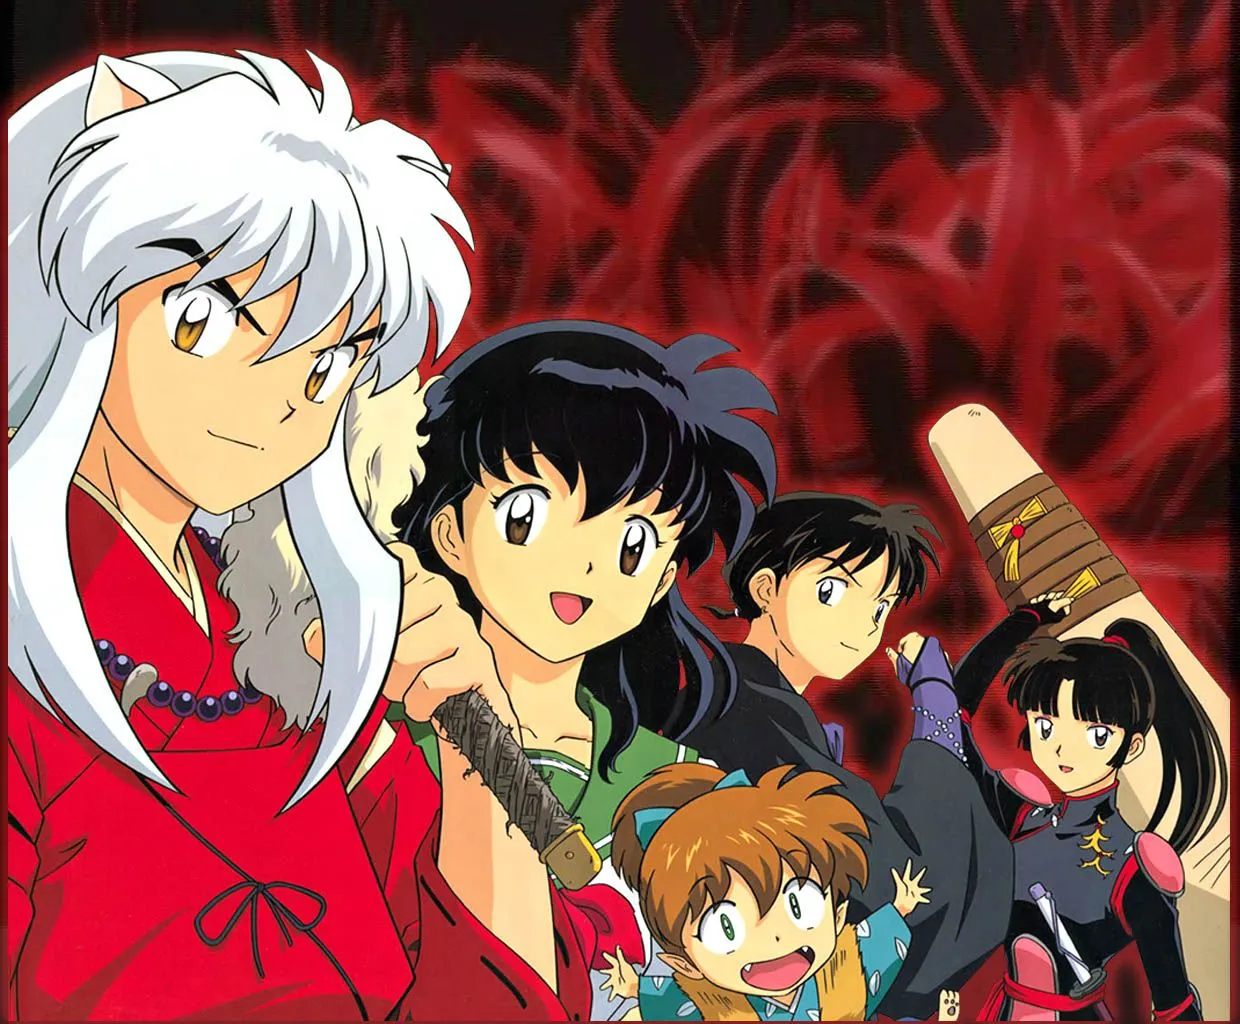  ... Anime.: Los 20 mejores animes de la historia (según los japoneses